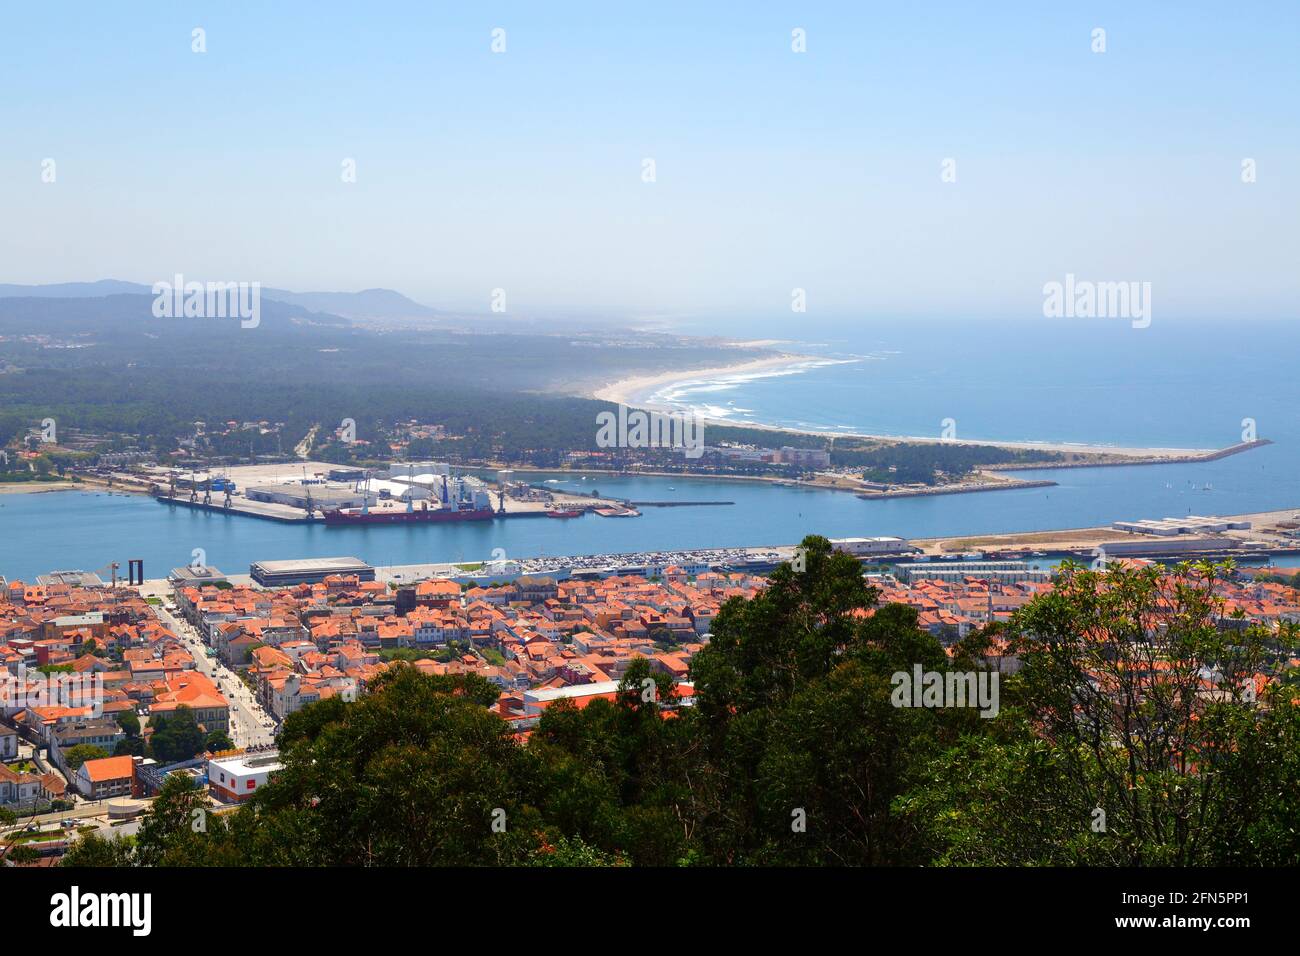 Aerial view of Viana do Castelo, River Lima estuary and part of port from Monte de Santa Luzia, Minho Province, northern Portugal Stock Photo